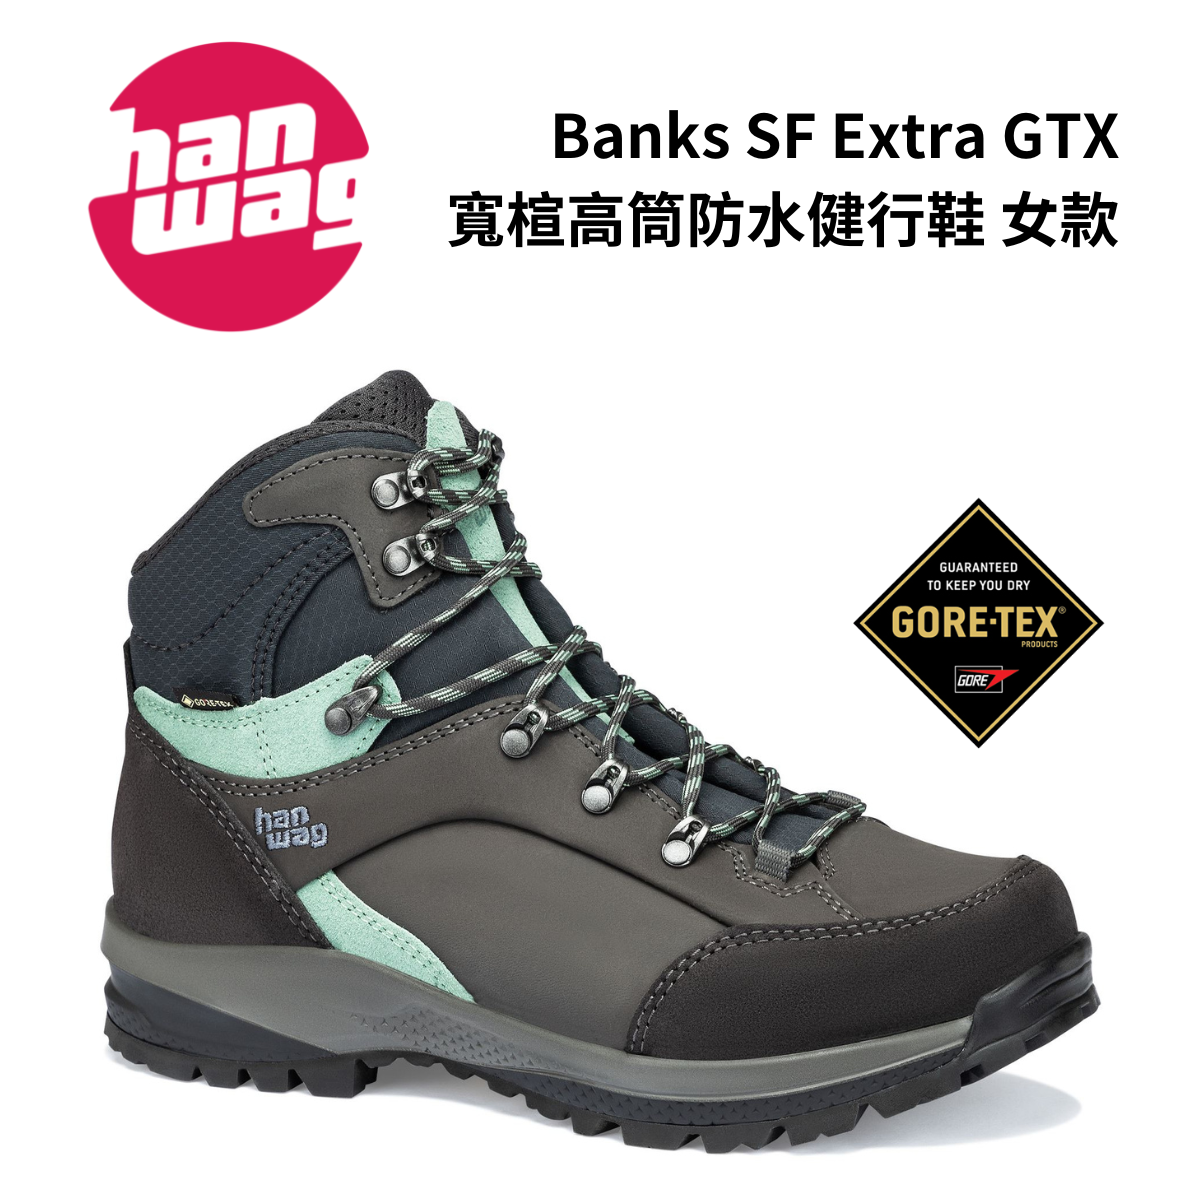 【Hanwag】Banks SF Extra Lady GTX 女款 寬楦高筒防水健行鞋 瀝青灰/薄荷綠